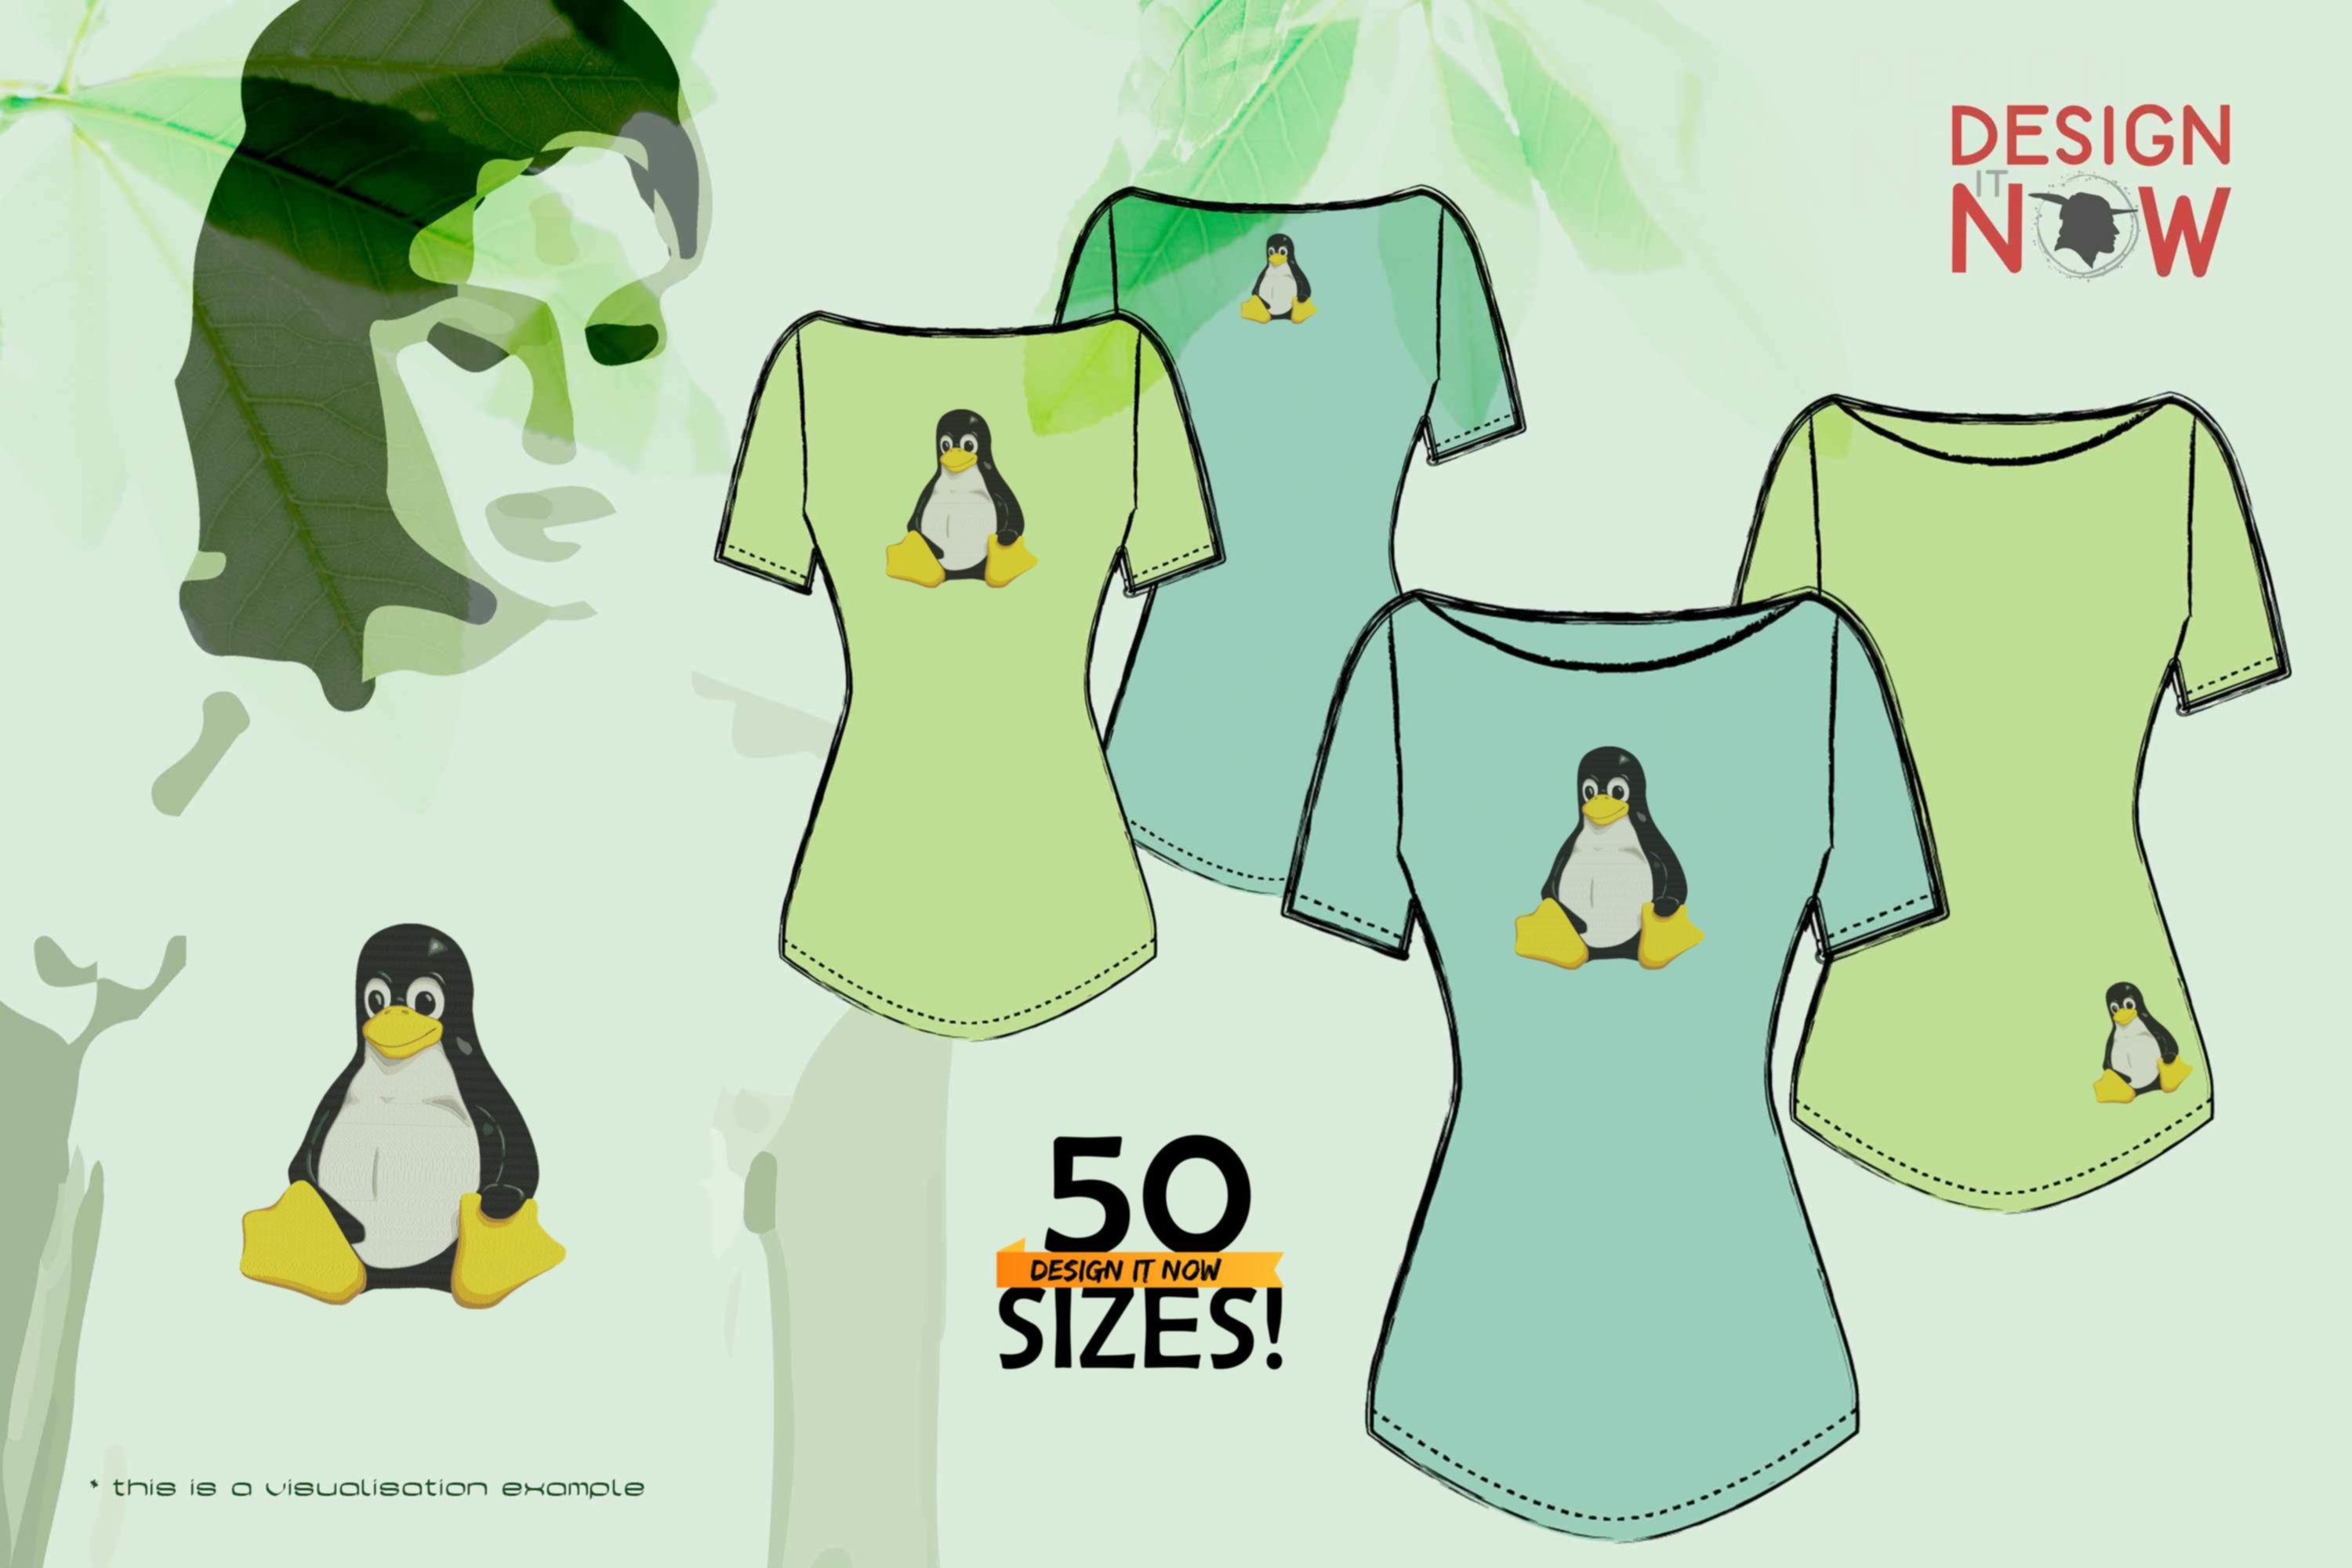 Penguin Tux Mascot